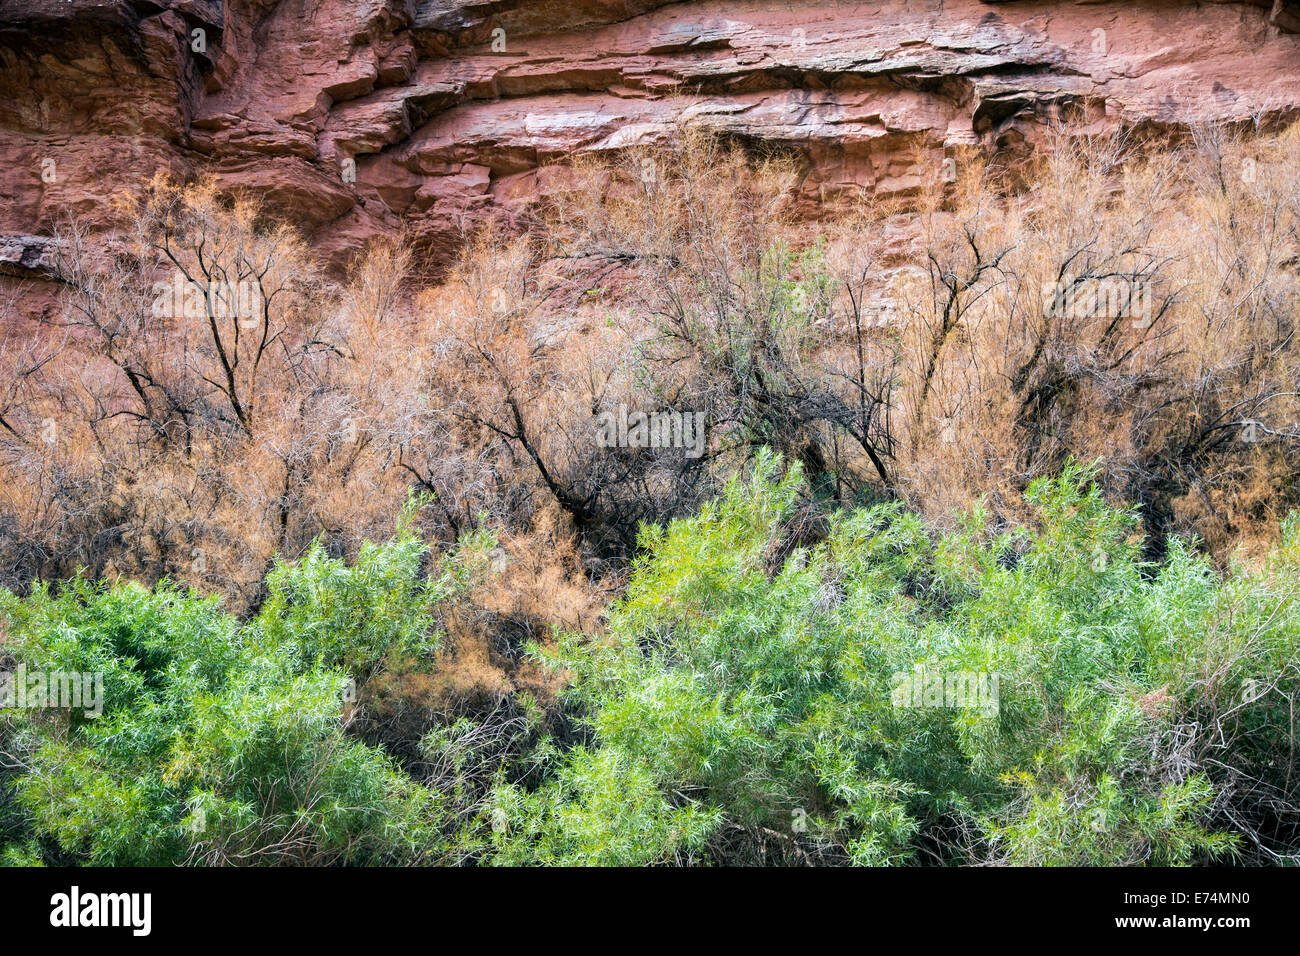 Il Parco Nazionale di Canyonlands, Utah - Dead tamerice (Tamarix) alberi linea le rive del fiume Colorado attraverso il Canyon di cataratta. Foto Stock